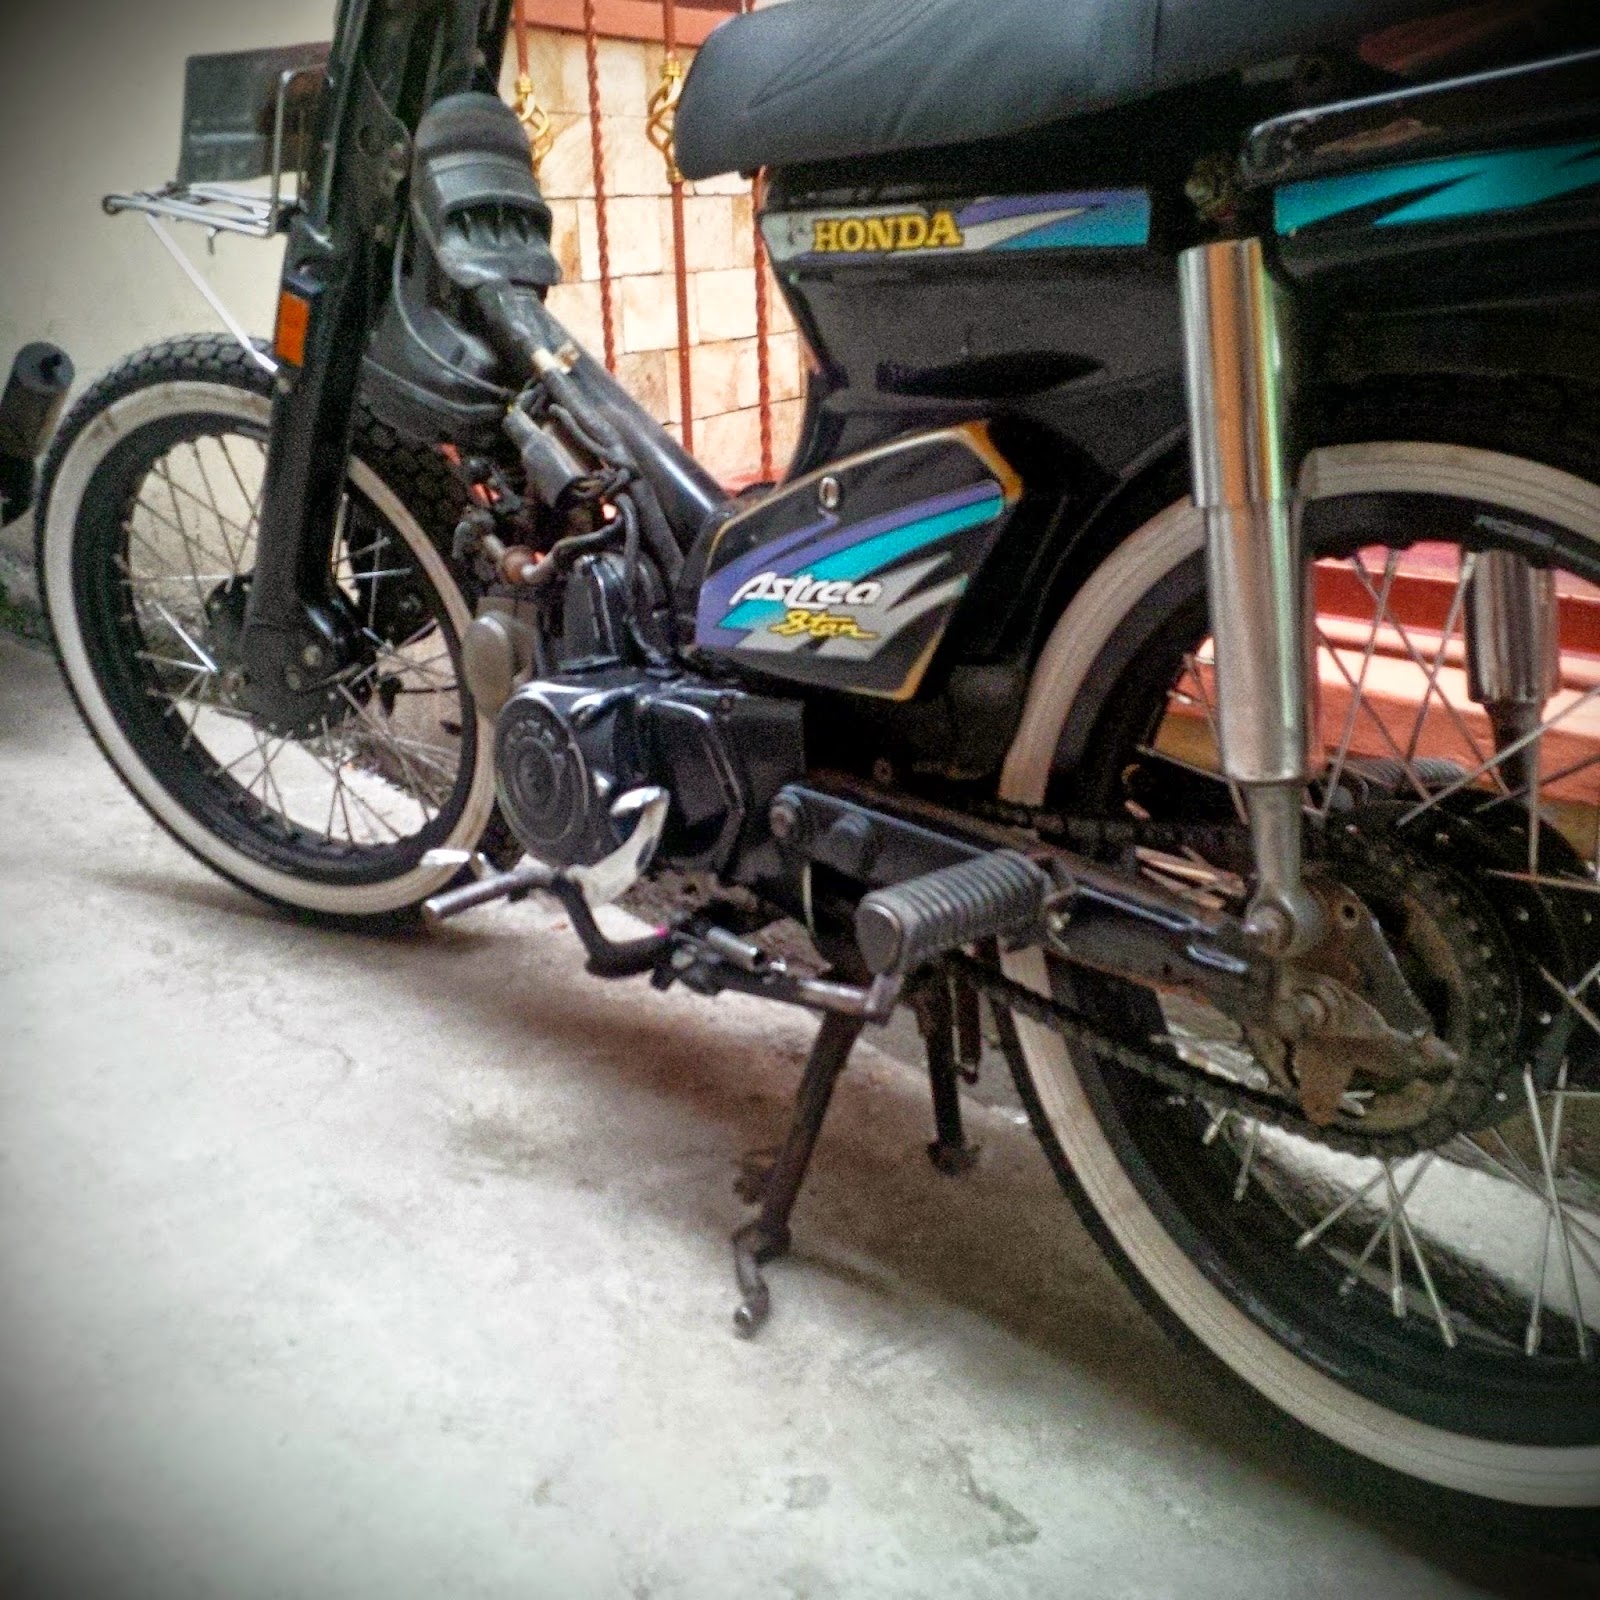 Bengkel Modifikasi Motor Choppy Street Cub Murah Bandung Bengkel